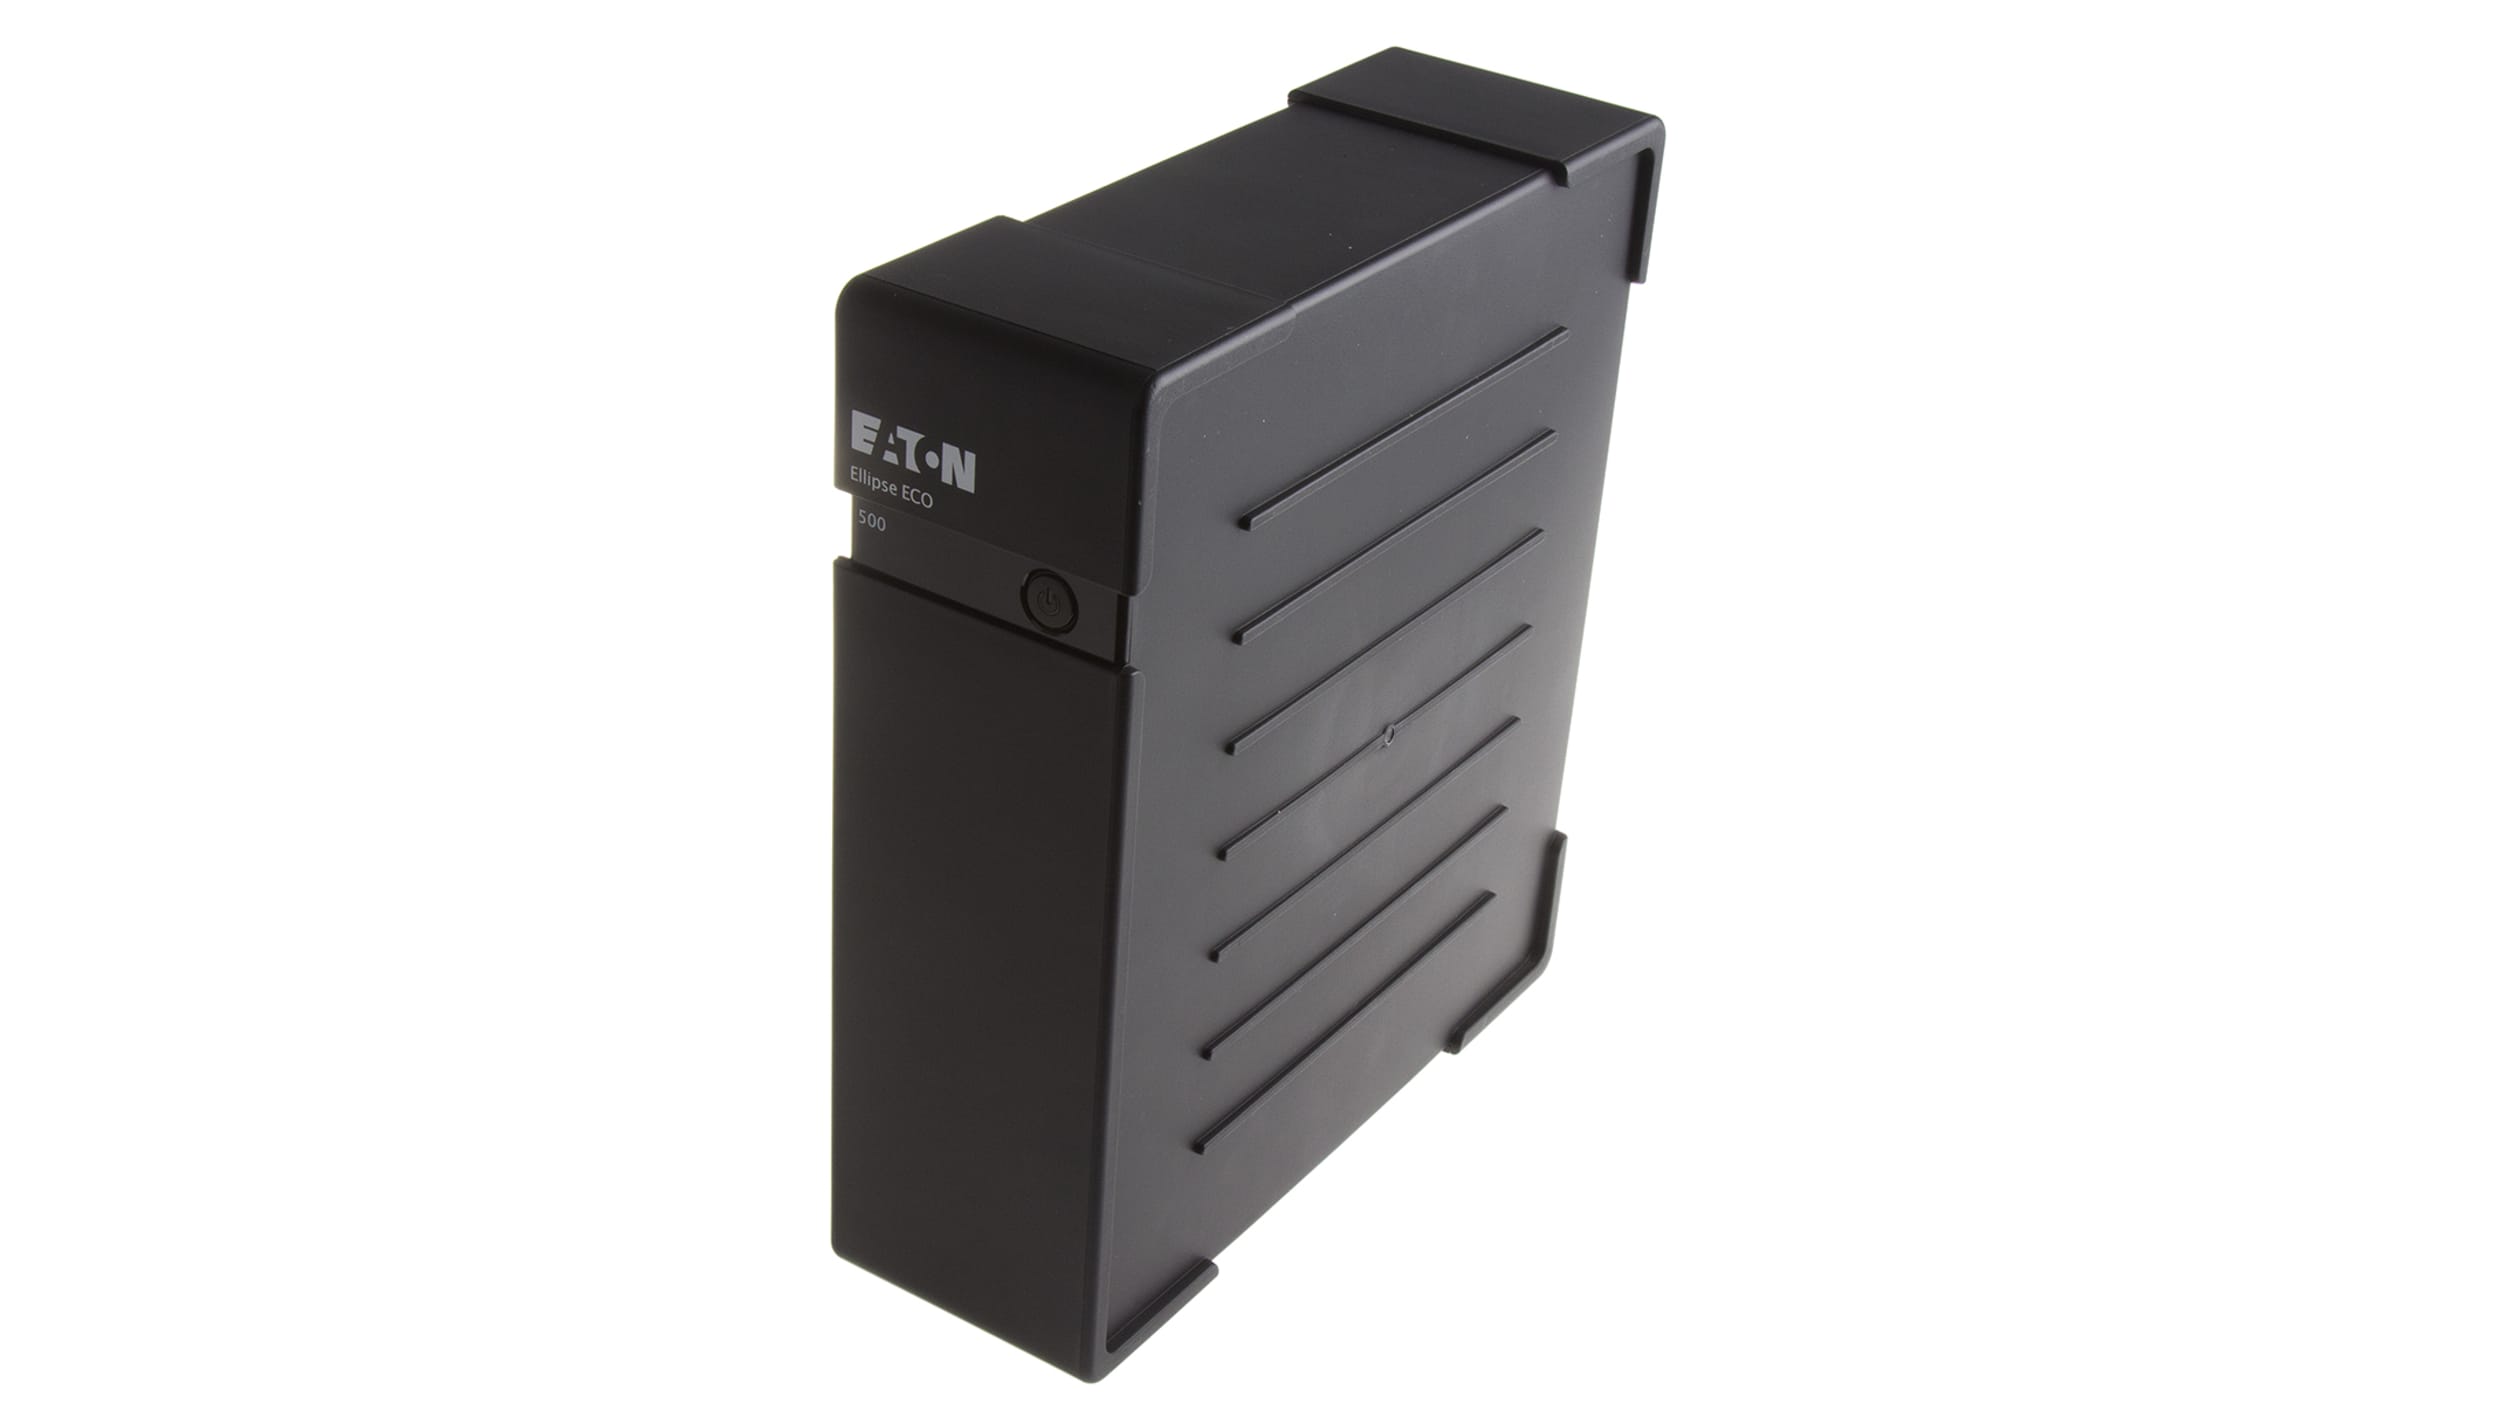 Eaton Ellipse ECO 1600 FR USB - Onduleur off-line avec fonction